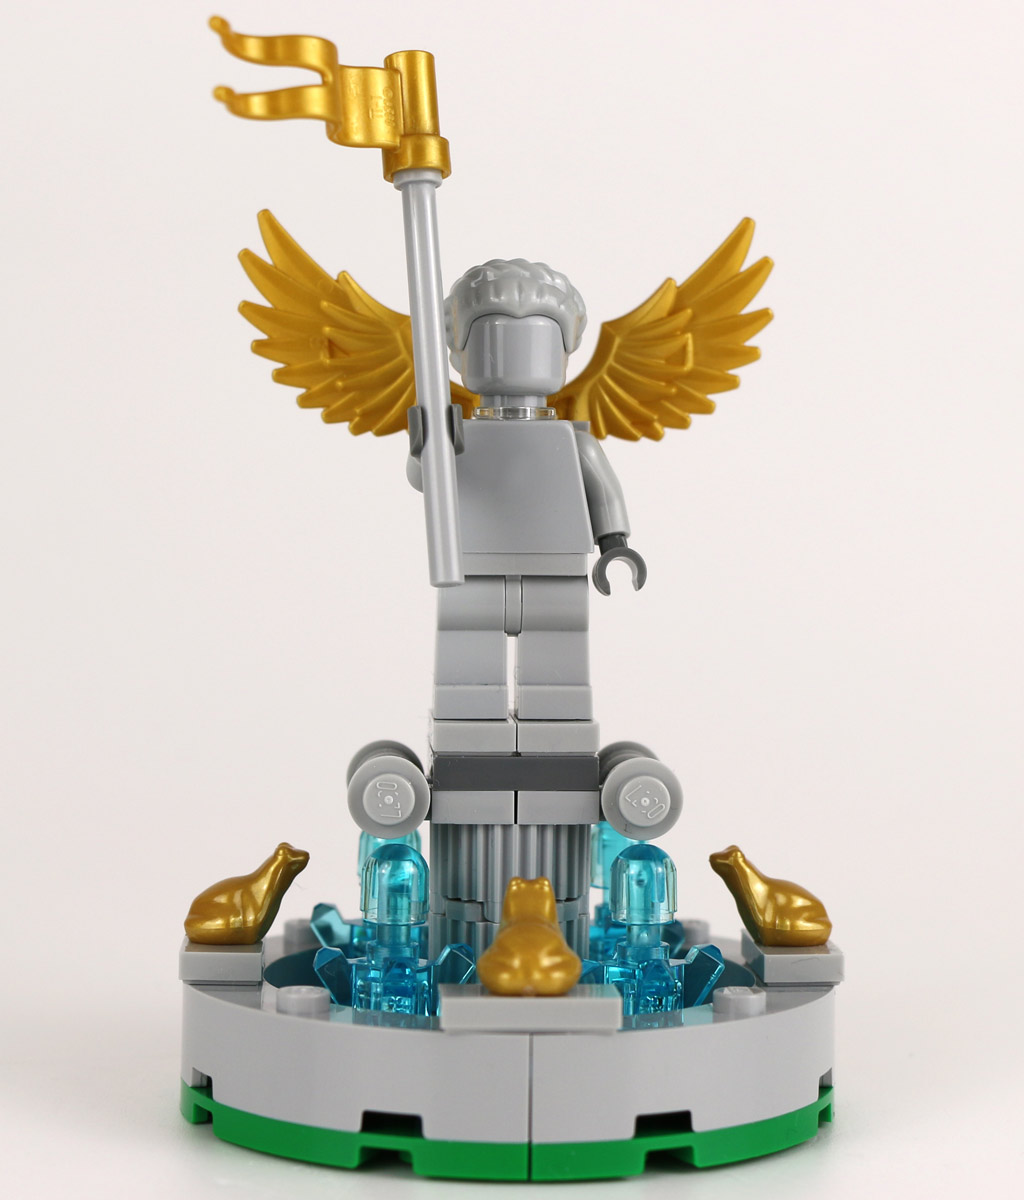 LEGO Creator Springbrunnen: Gratis-Set im Review | zusammengebaut